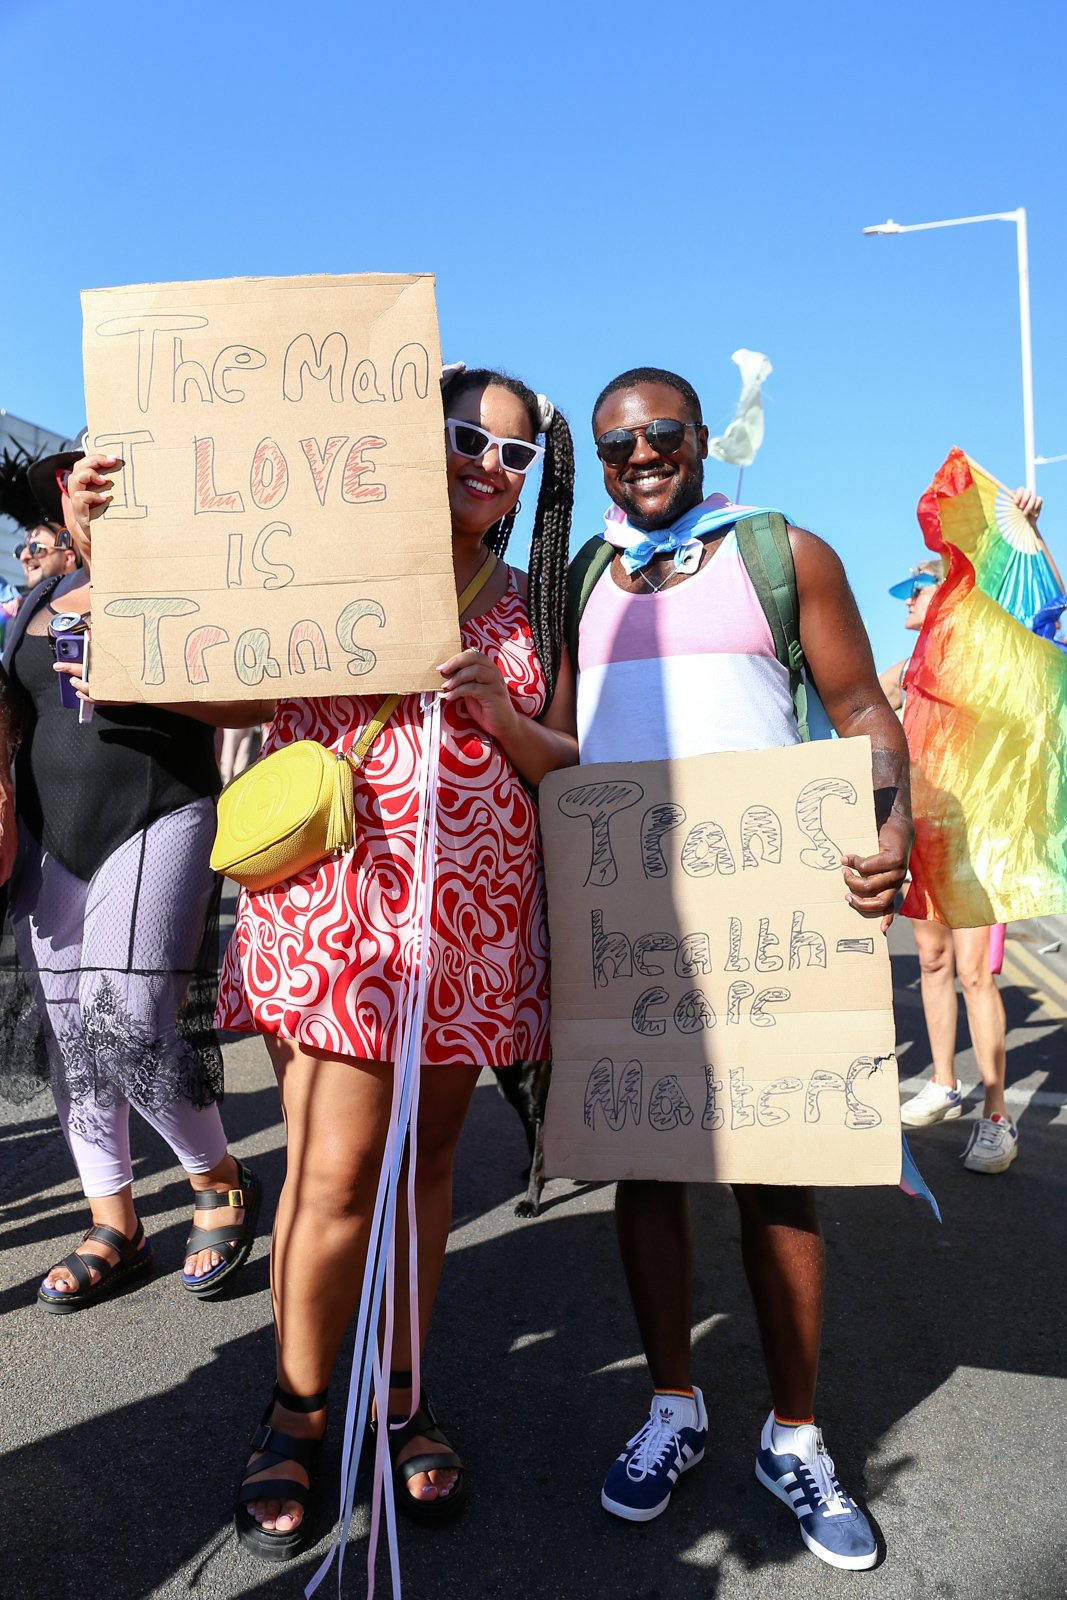 Margate Pride 2022